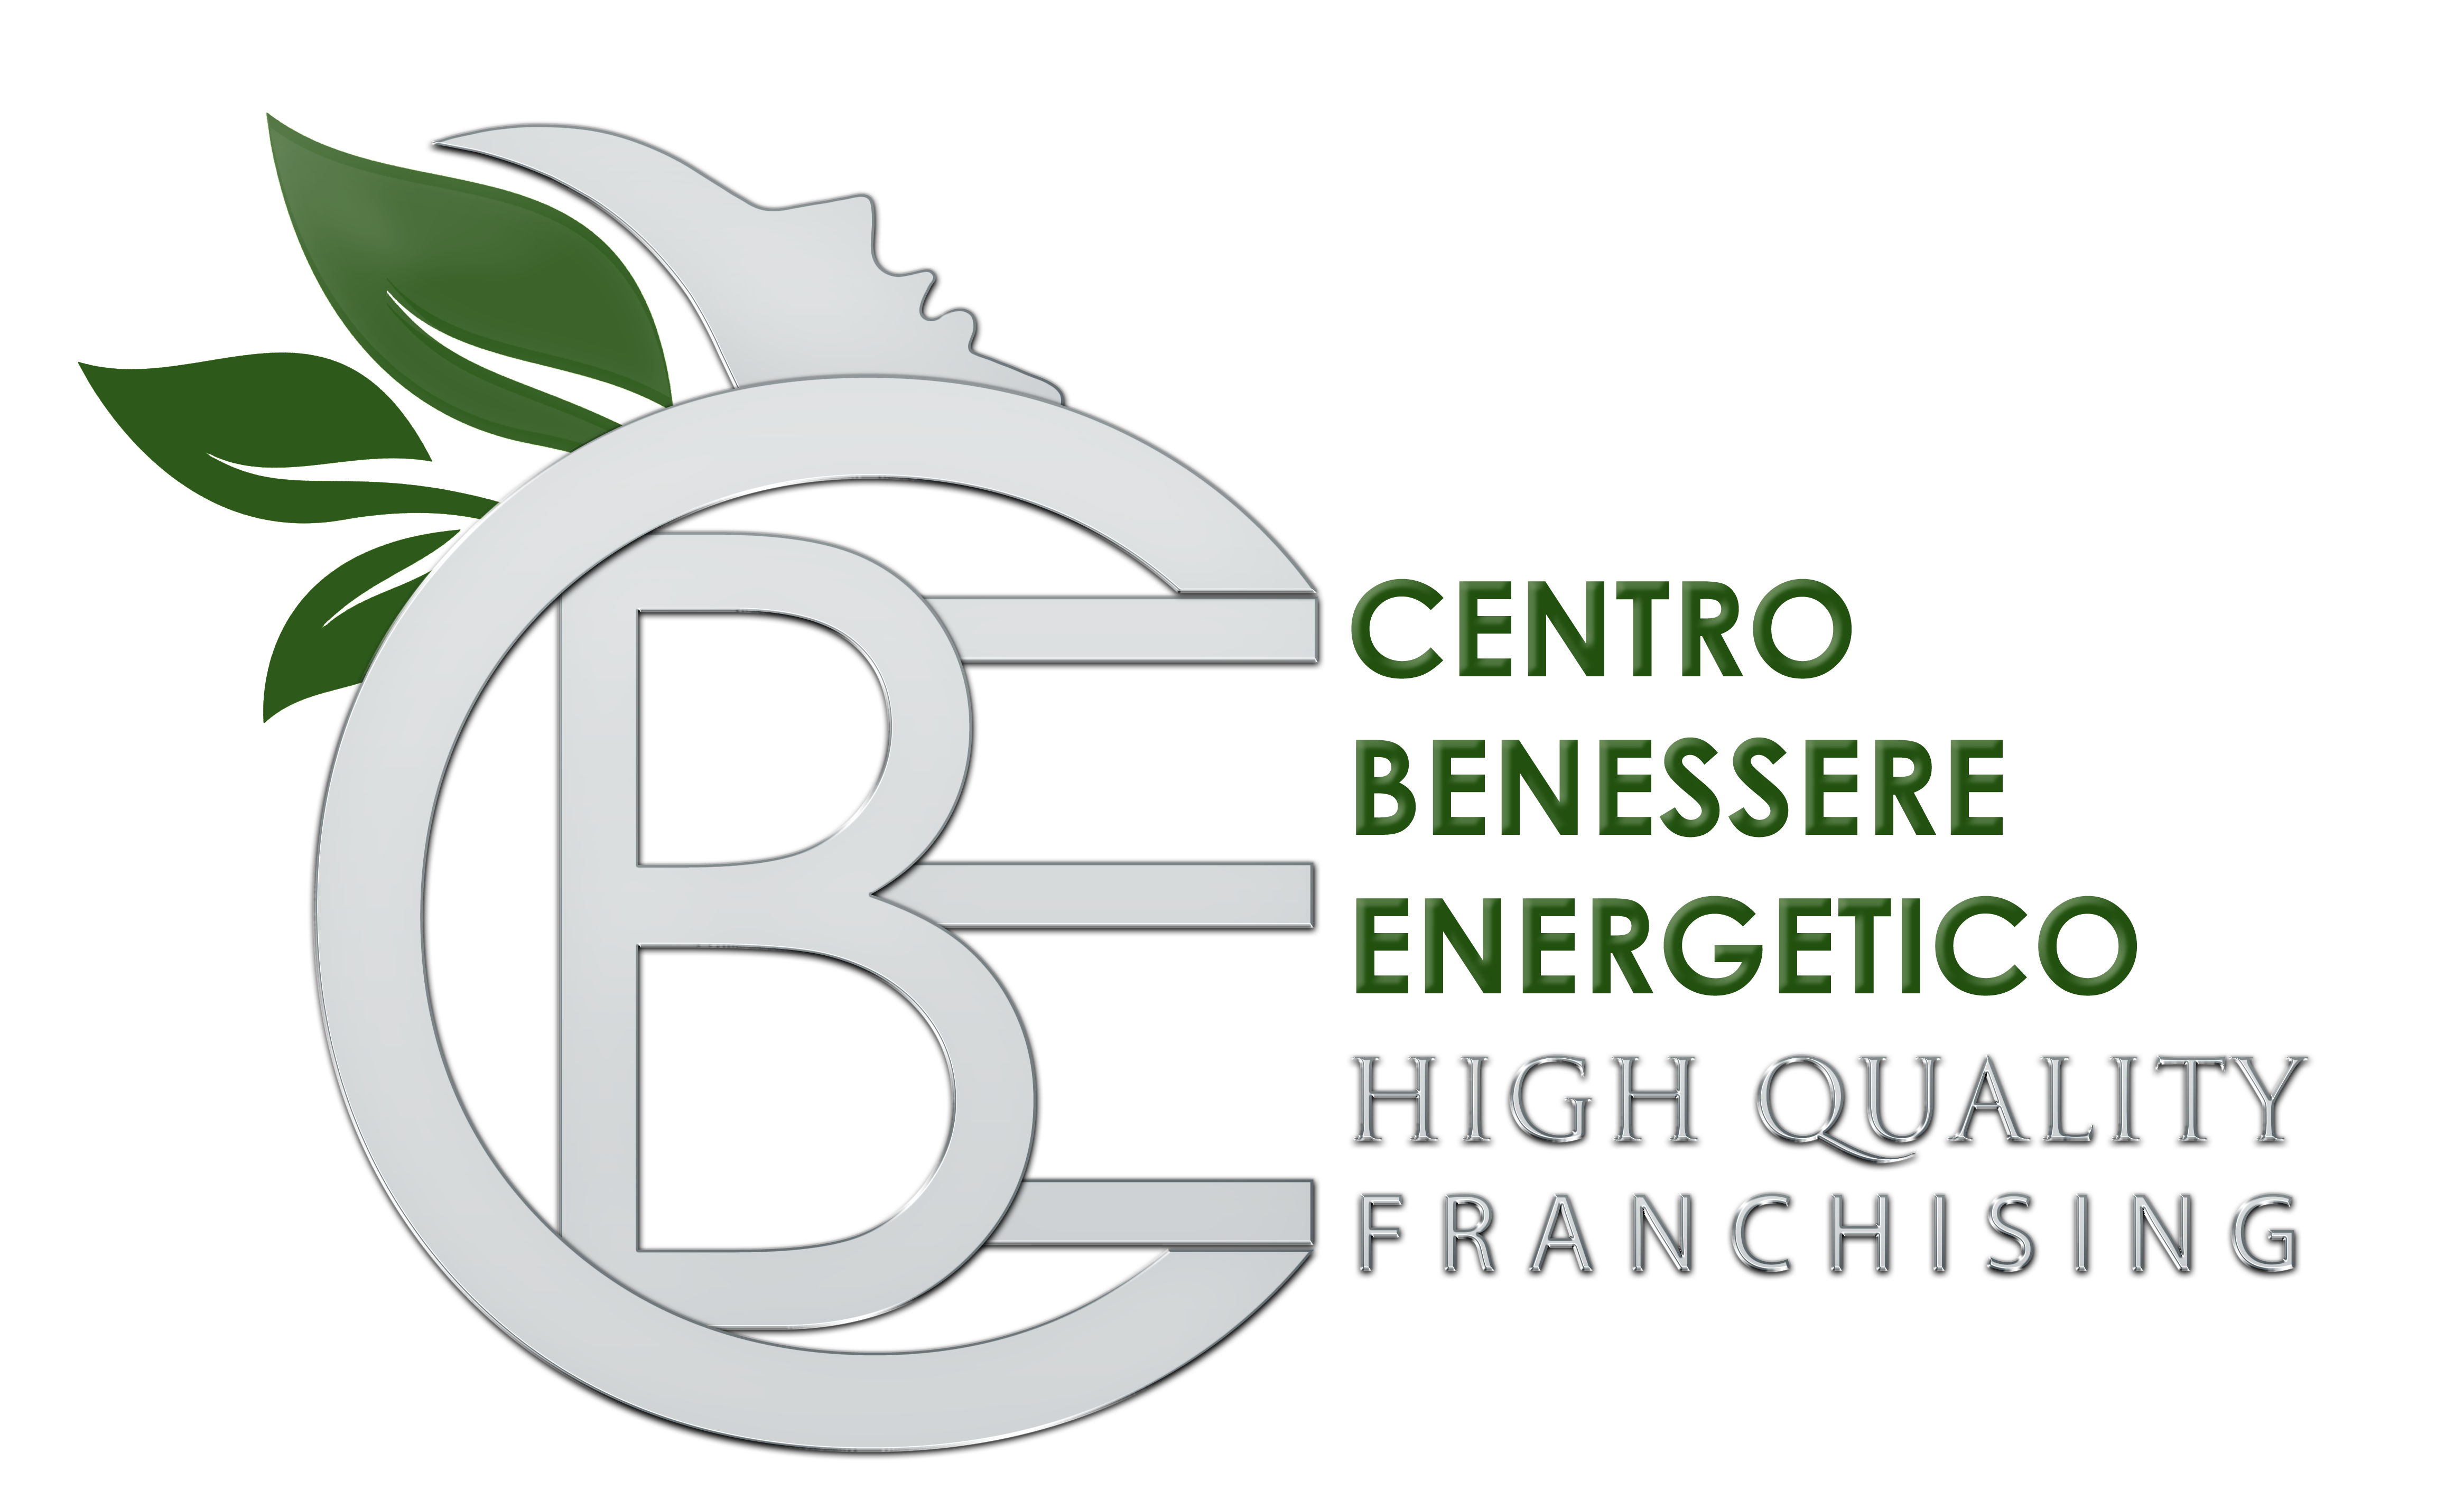 C.B.E. - Centro Benessere Energetico